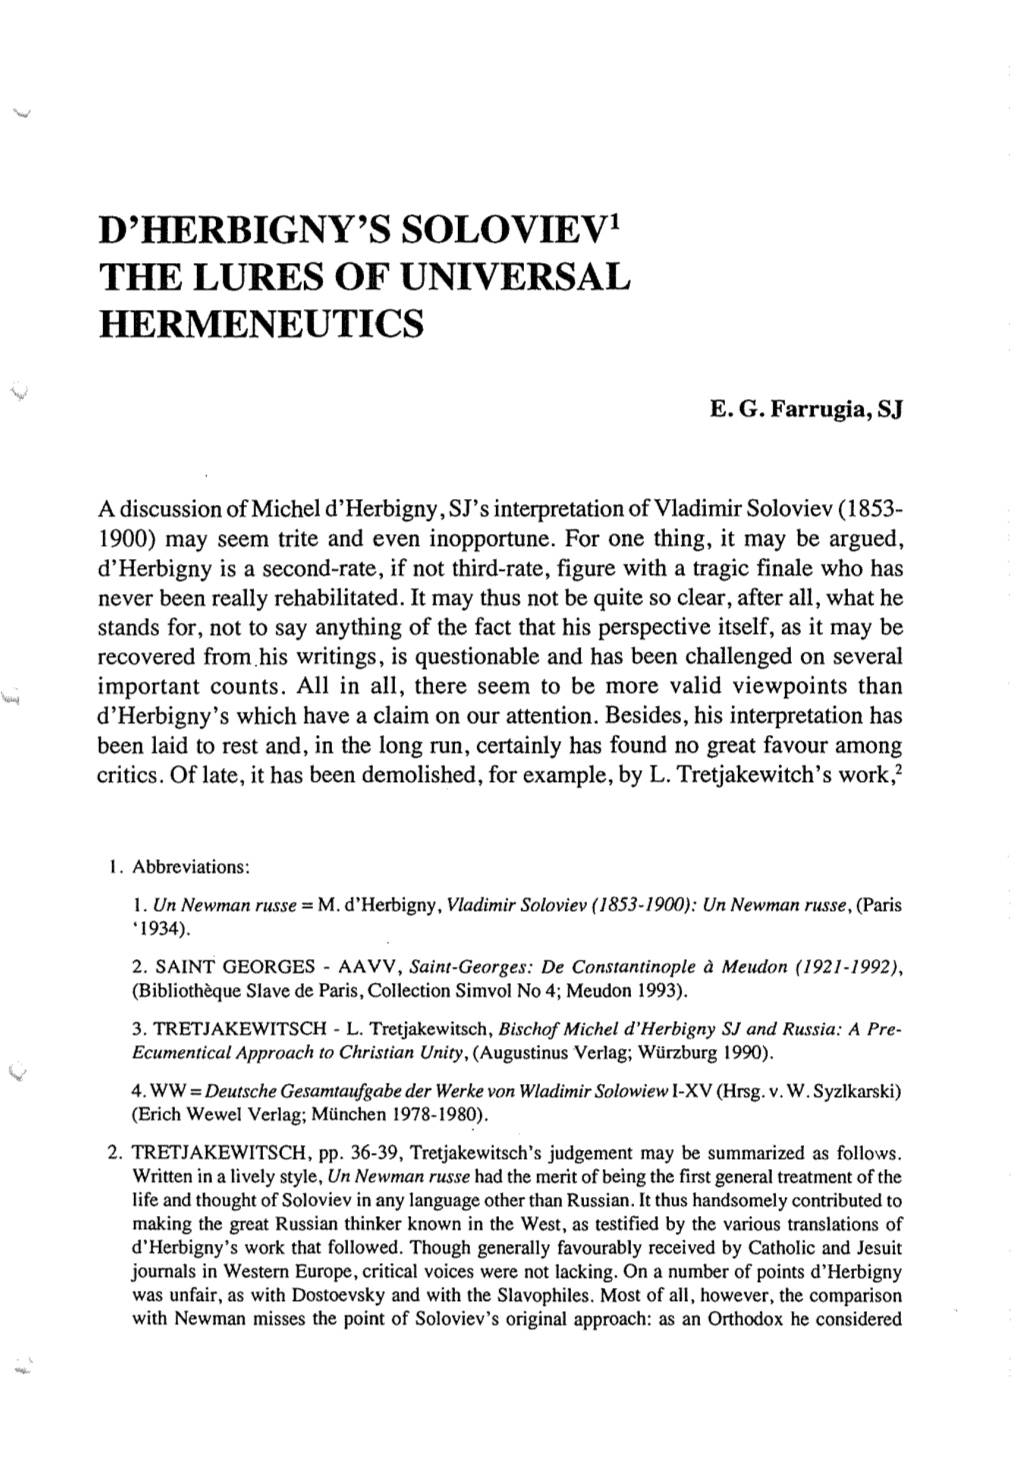 D'herbigny's Solovievt the LURES of UNIVERSAL HERMENEUTICS